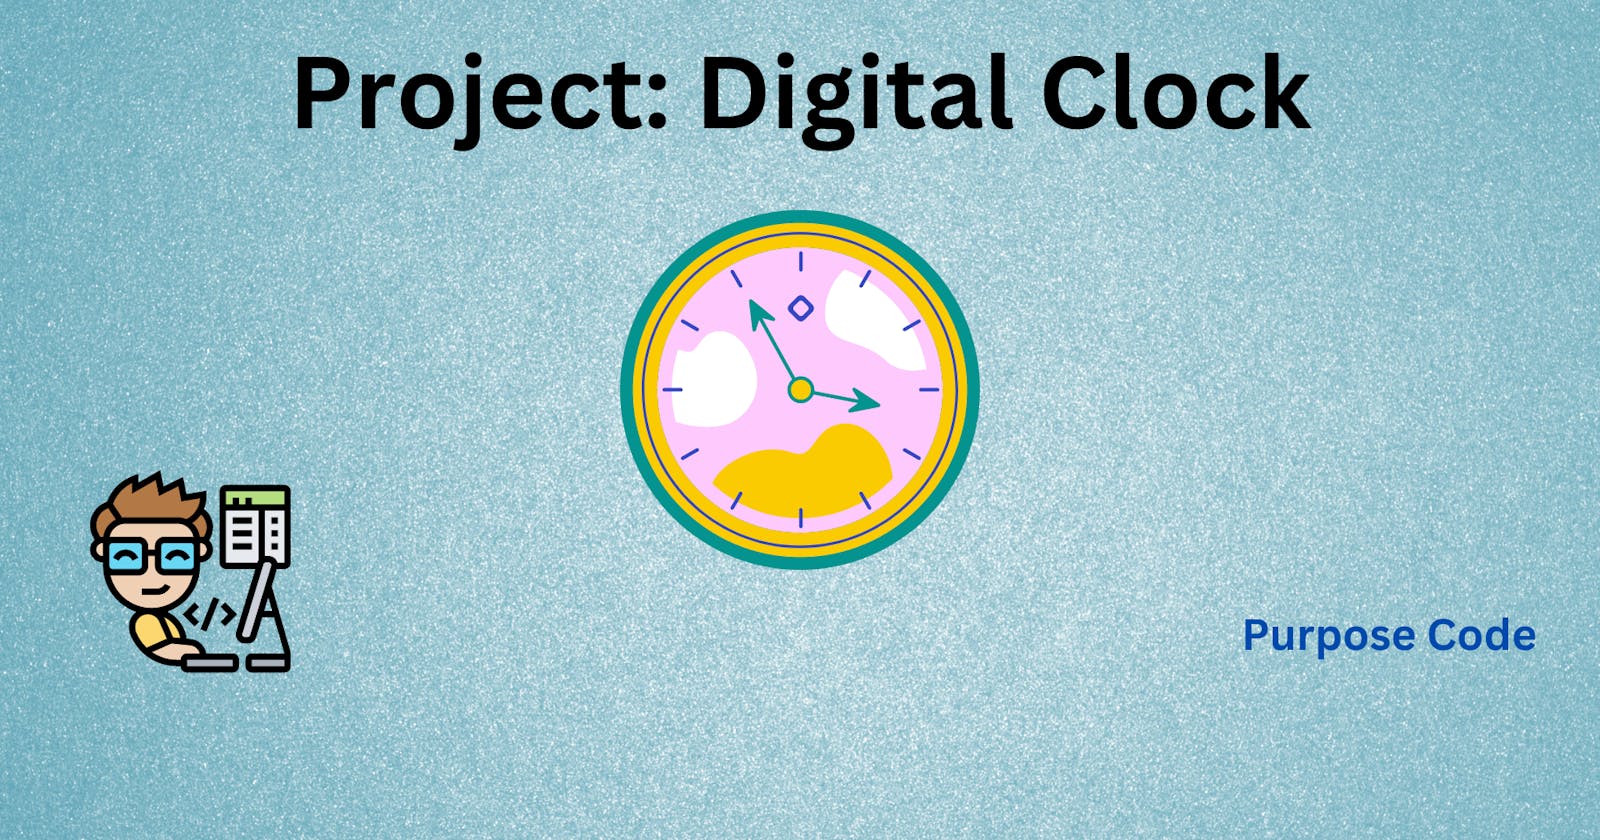 Project: Digital Clock